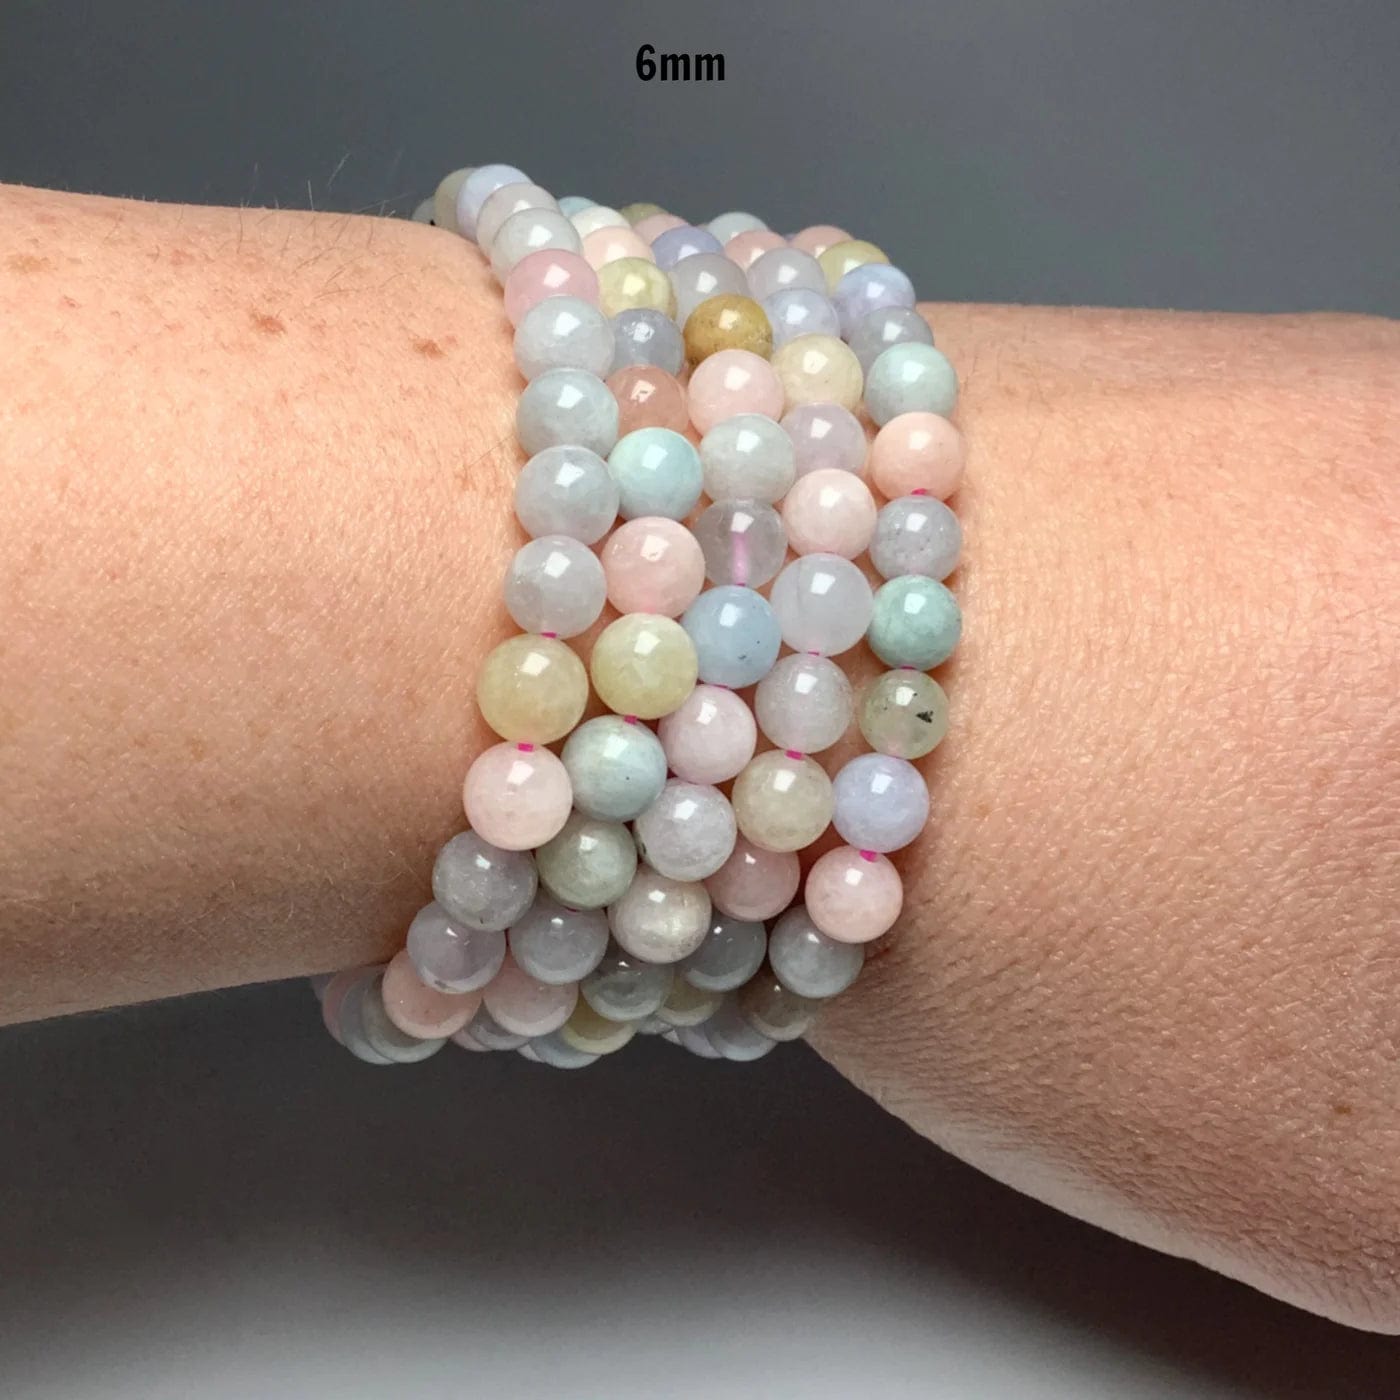 Morganite - elastic bracelet in worked spheres